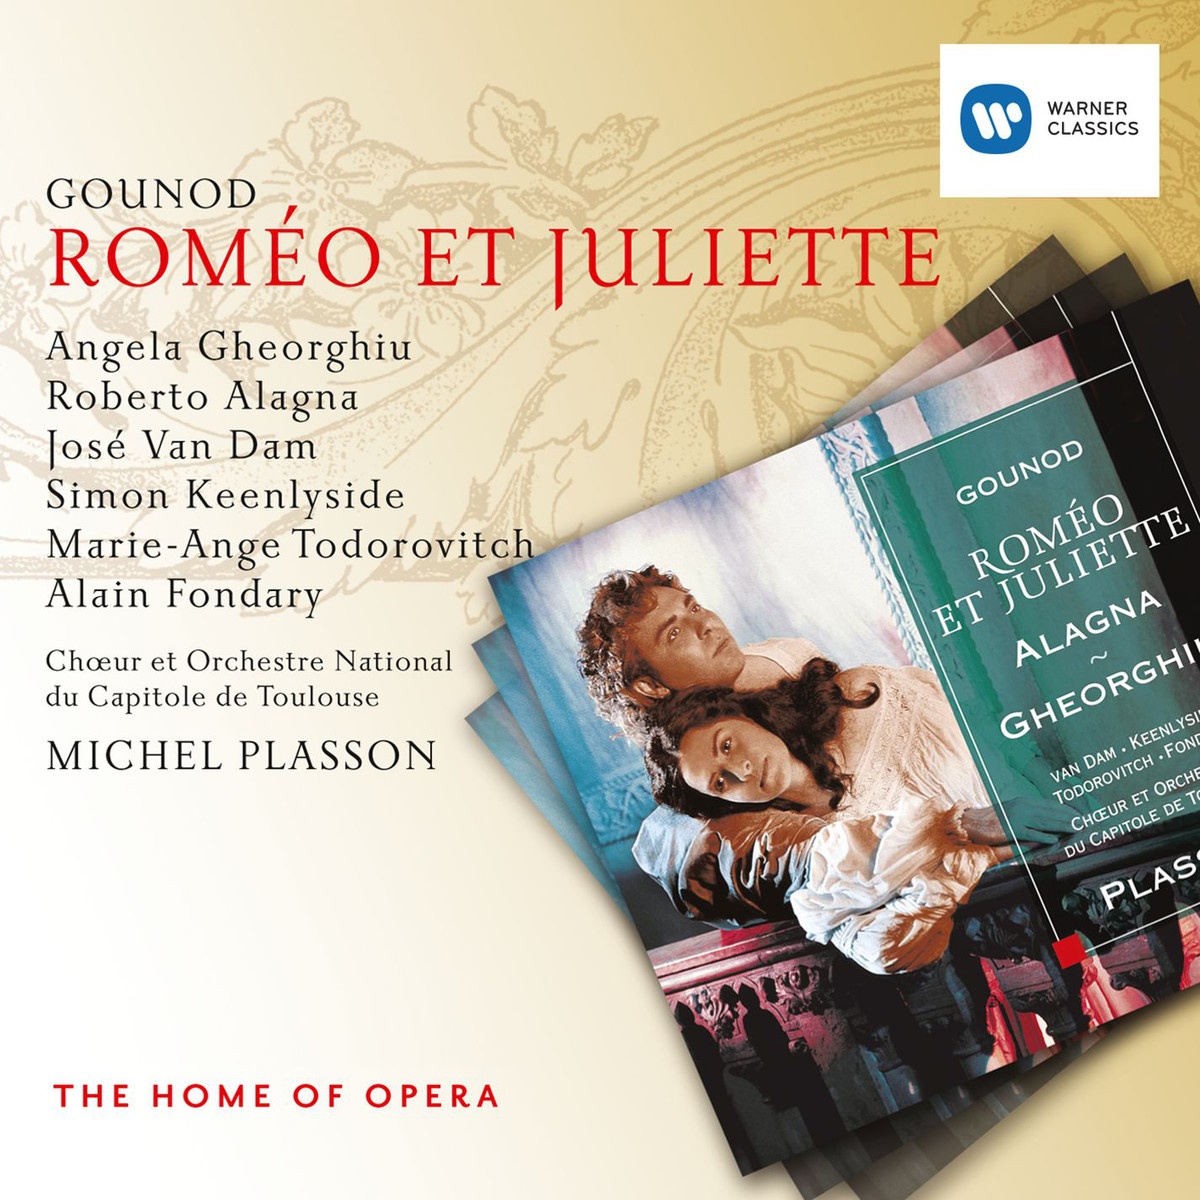 Rome o et Juliette, ACT IV: V. La jeune Fille au voile